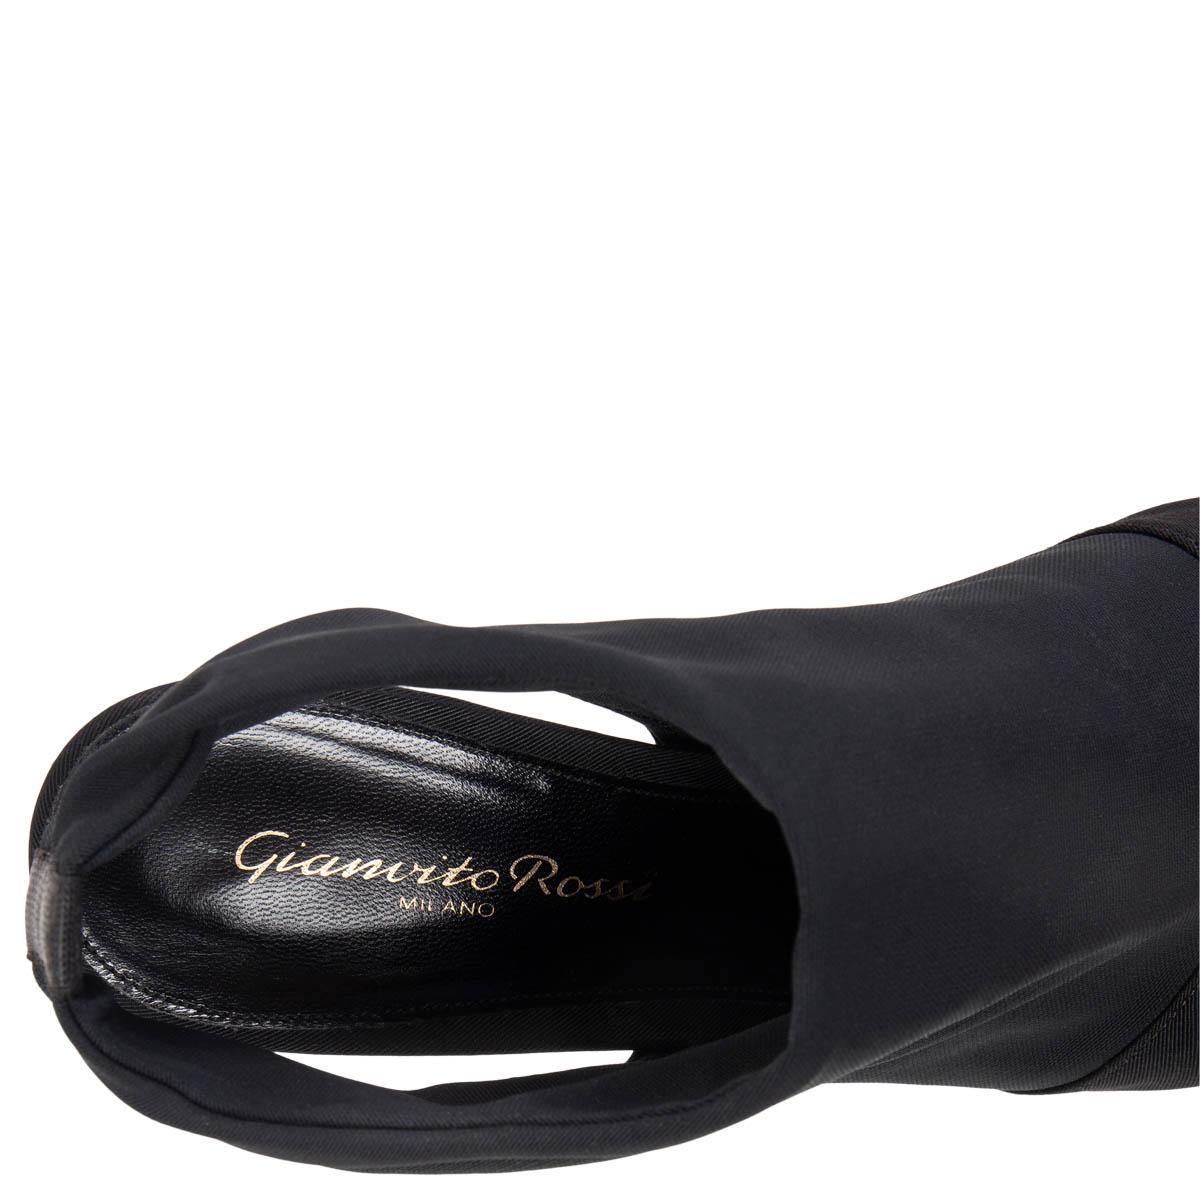 GIANVITO ROSSI black GROSGRAIN SLINGBACK PLATFORM Sandals Shoes 37 For Sale 1